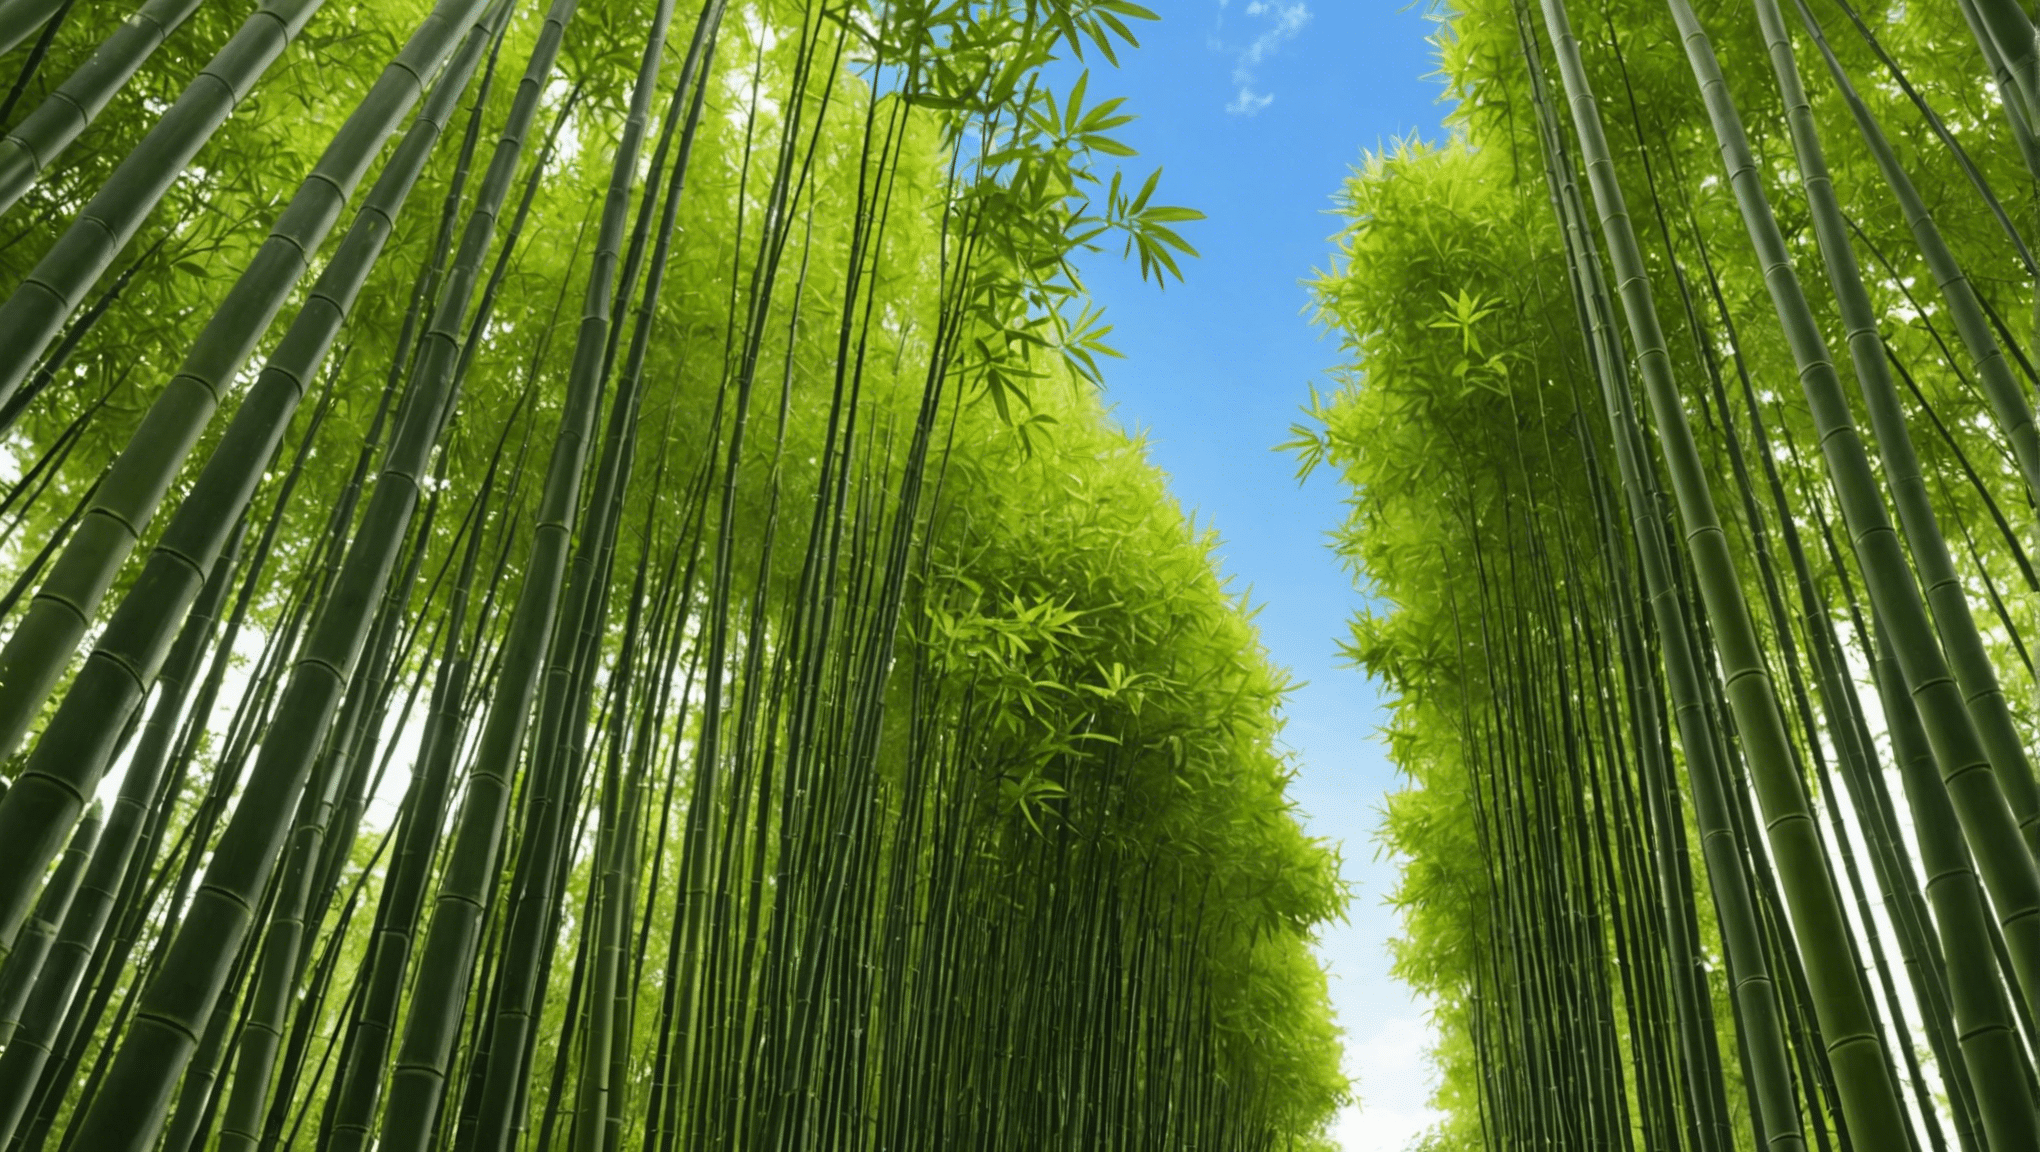 Erfahren Sie mehr über die Rolle von Bambussamen bei der Förderung der ökologischen Nachhaltigkeit und des Umweltschutzes.